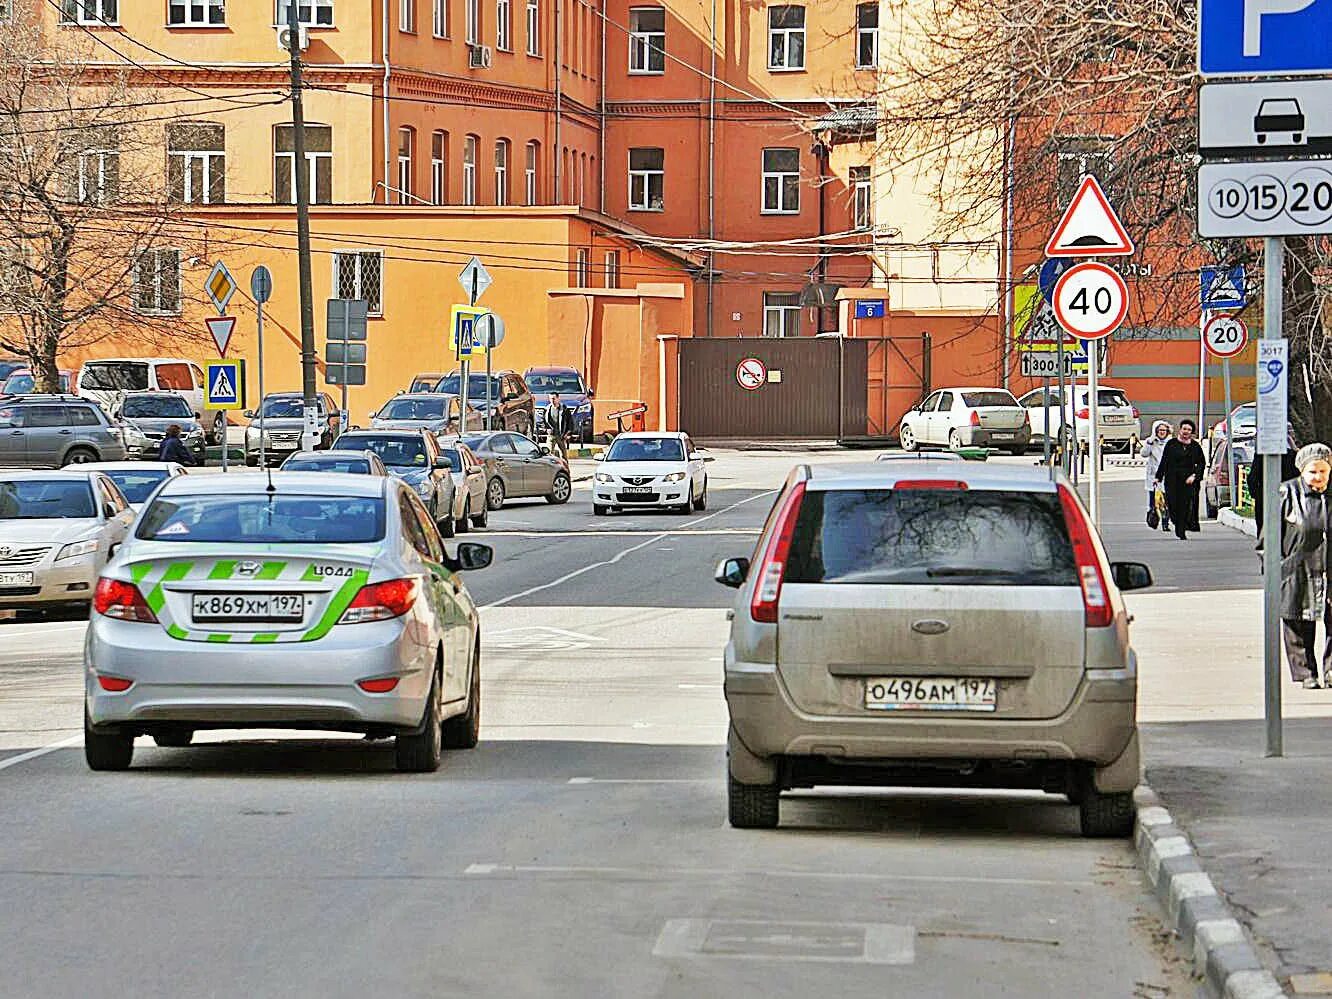 Сайт платный машины. Ограничения на автомобиль. Авто с ограничениями. Москва город парковка дорога. Фото ограничения автомобиля.